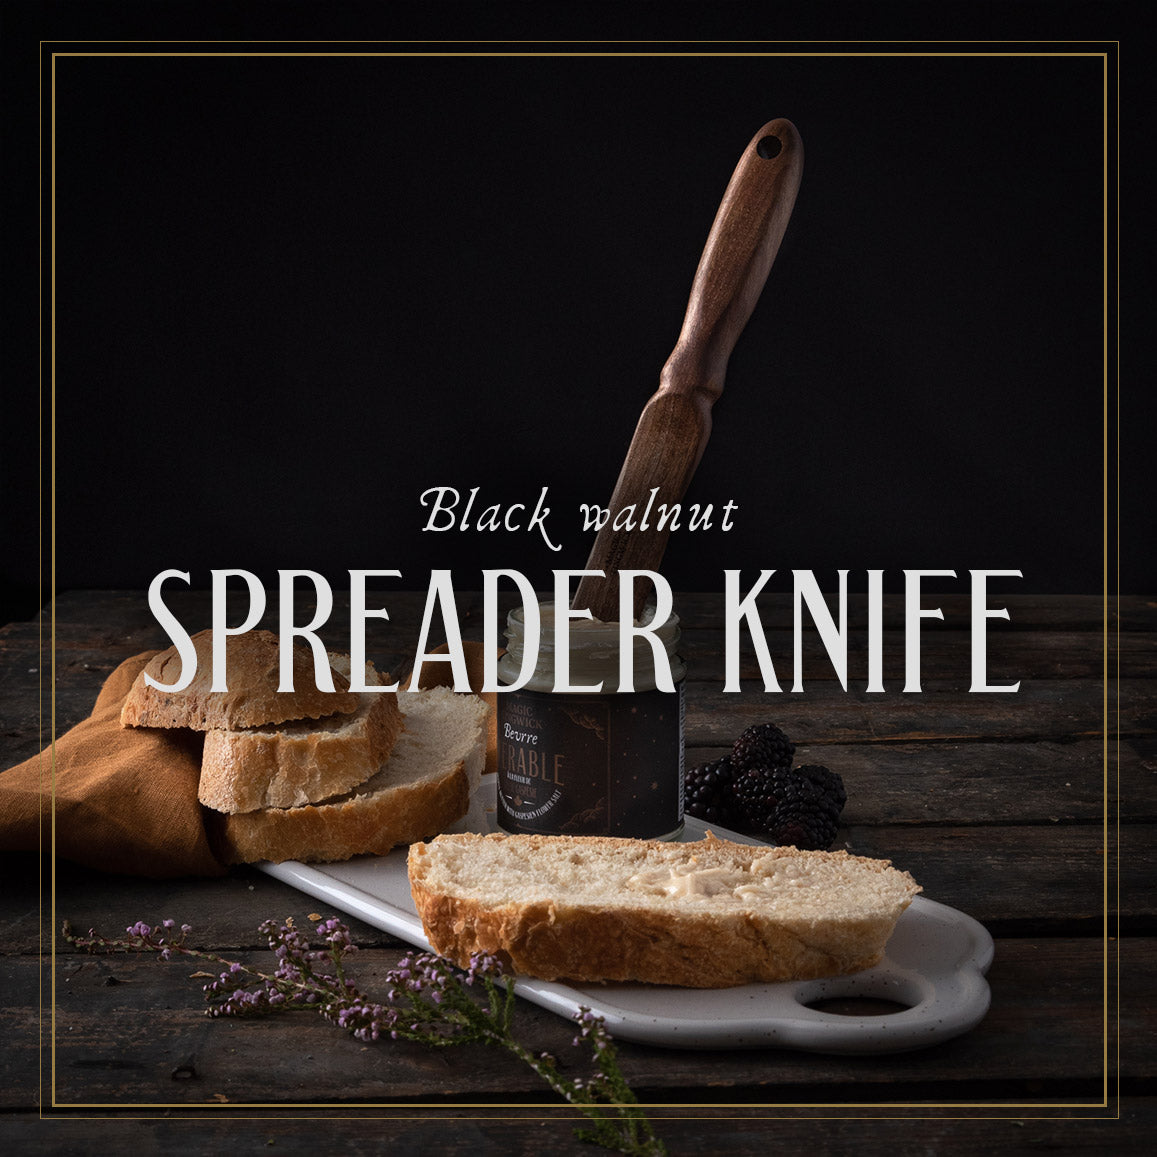 Black walnut spreader knife